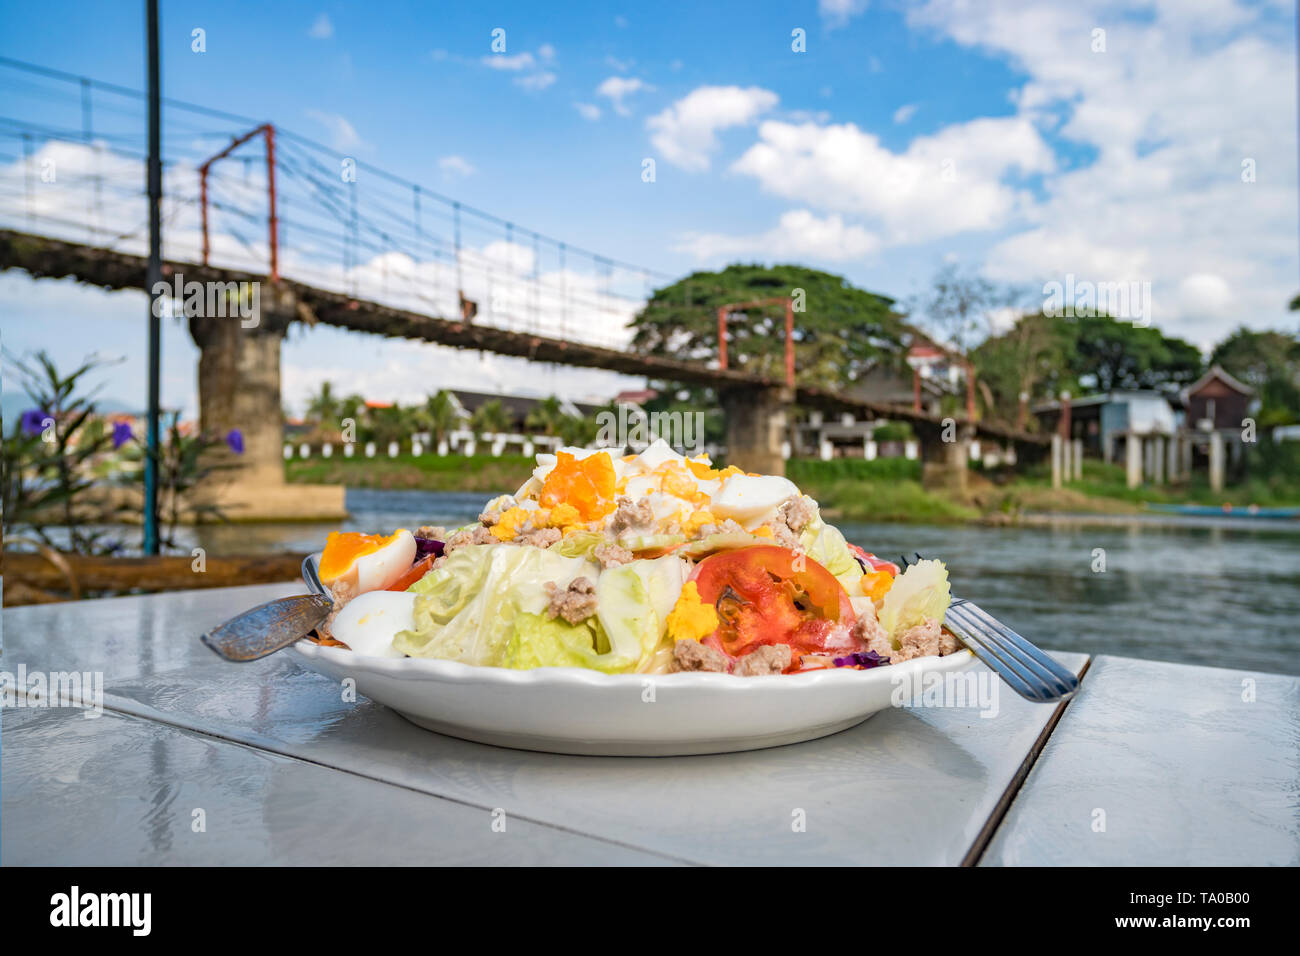 Leckeren Salat ist ein Gericht der Nationalen laotischer Küche. Im Freien essen. Serviert Gerichte im Restaurant auf dem Tisch gegen den Fluss. Asiatische Küche. Stockfoto